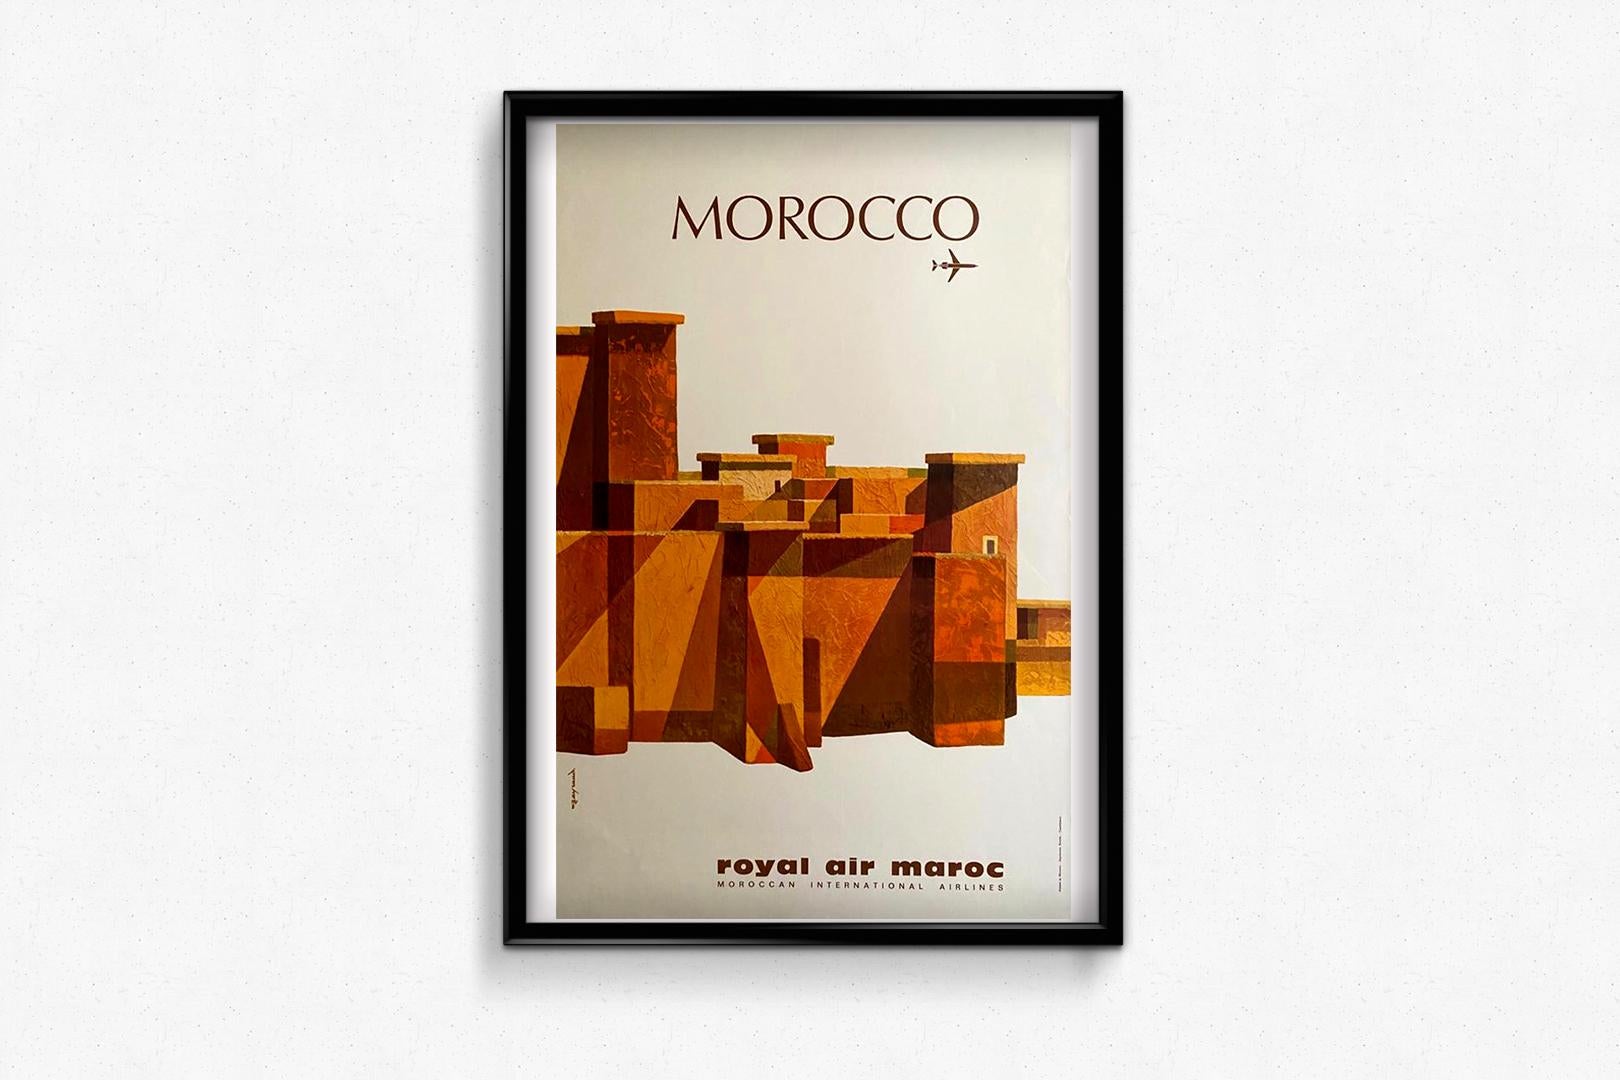 Très belle affiche de voyage commandée à Lande vers les années 1960 par Royal Air Maroc pour promouvoir les voyages vers ses terres.

Royal Air Maroc est une compagnie aérienne marocaine fondée en 1957. Son principal hub est situé à l'aéroport